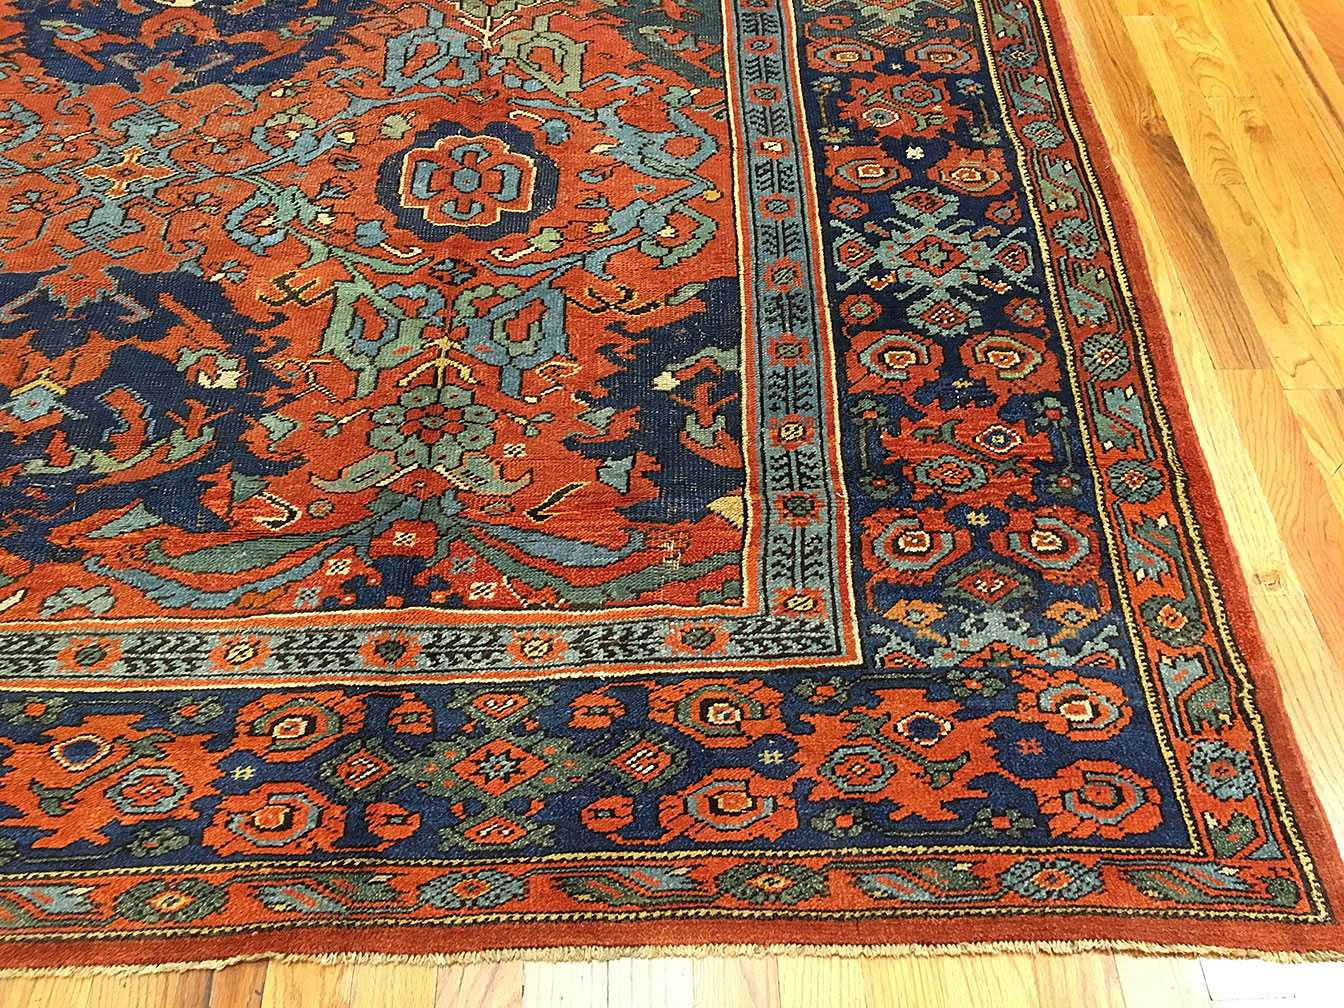 Antique smyrna Carpet - # 52109